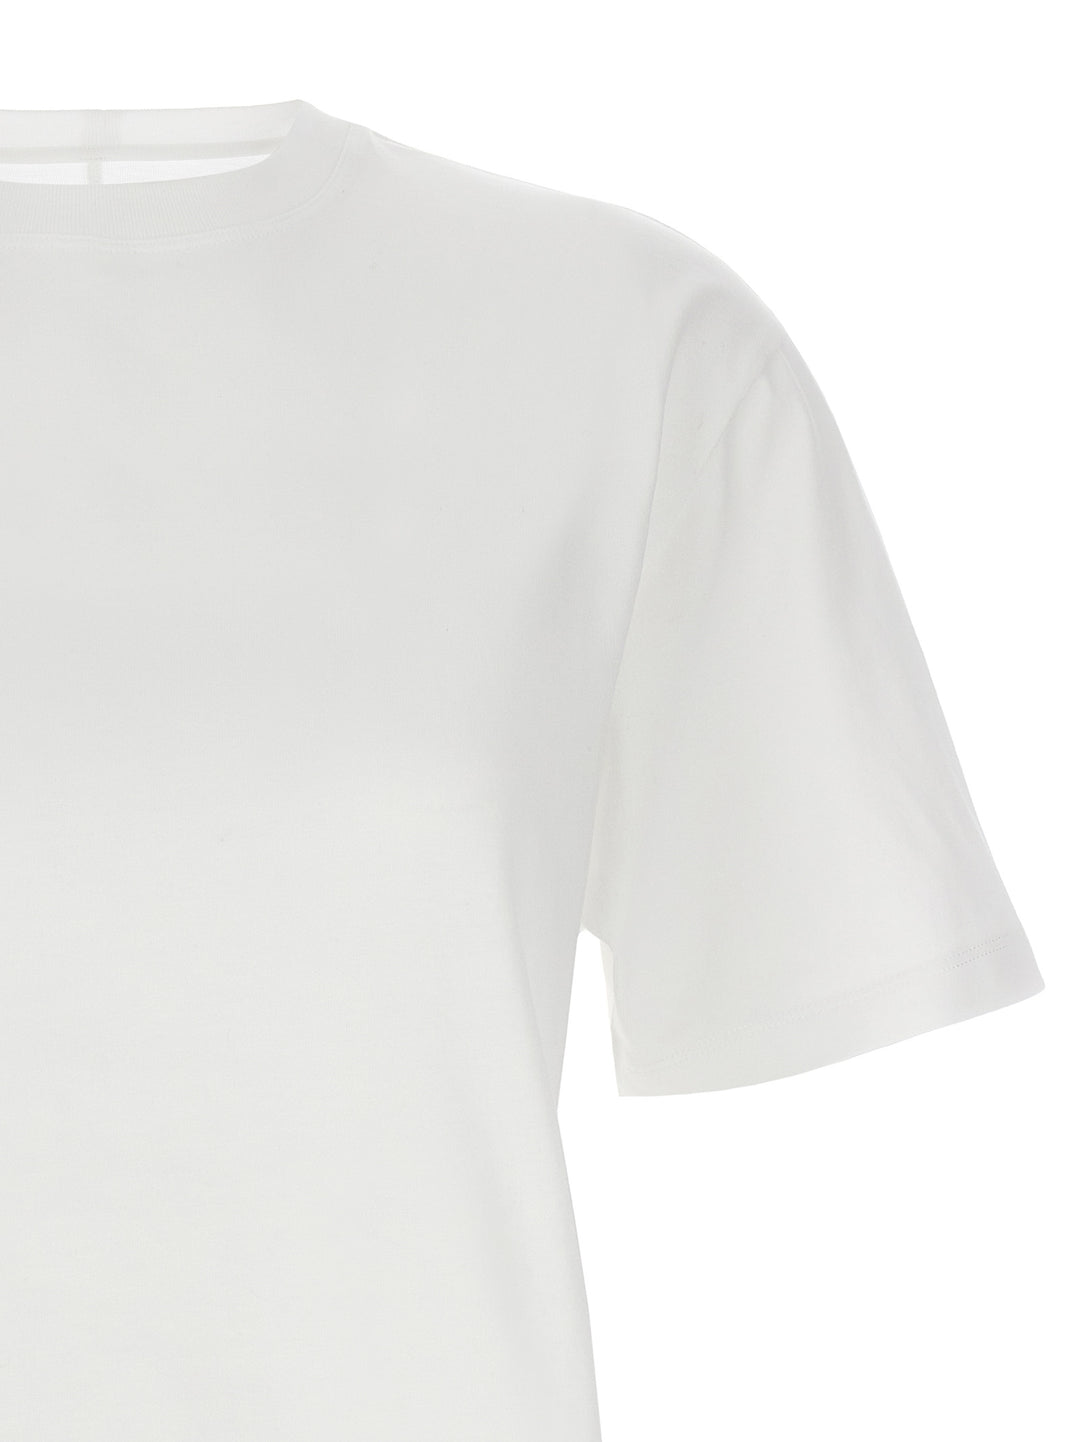 Vittoria T Shirt Bianco